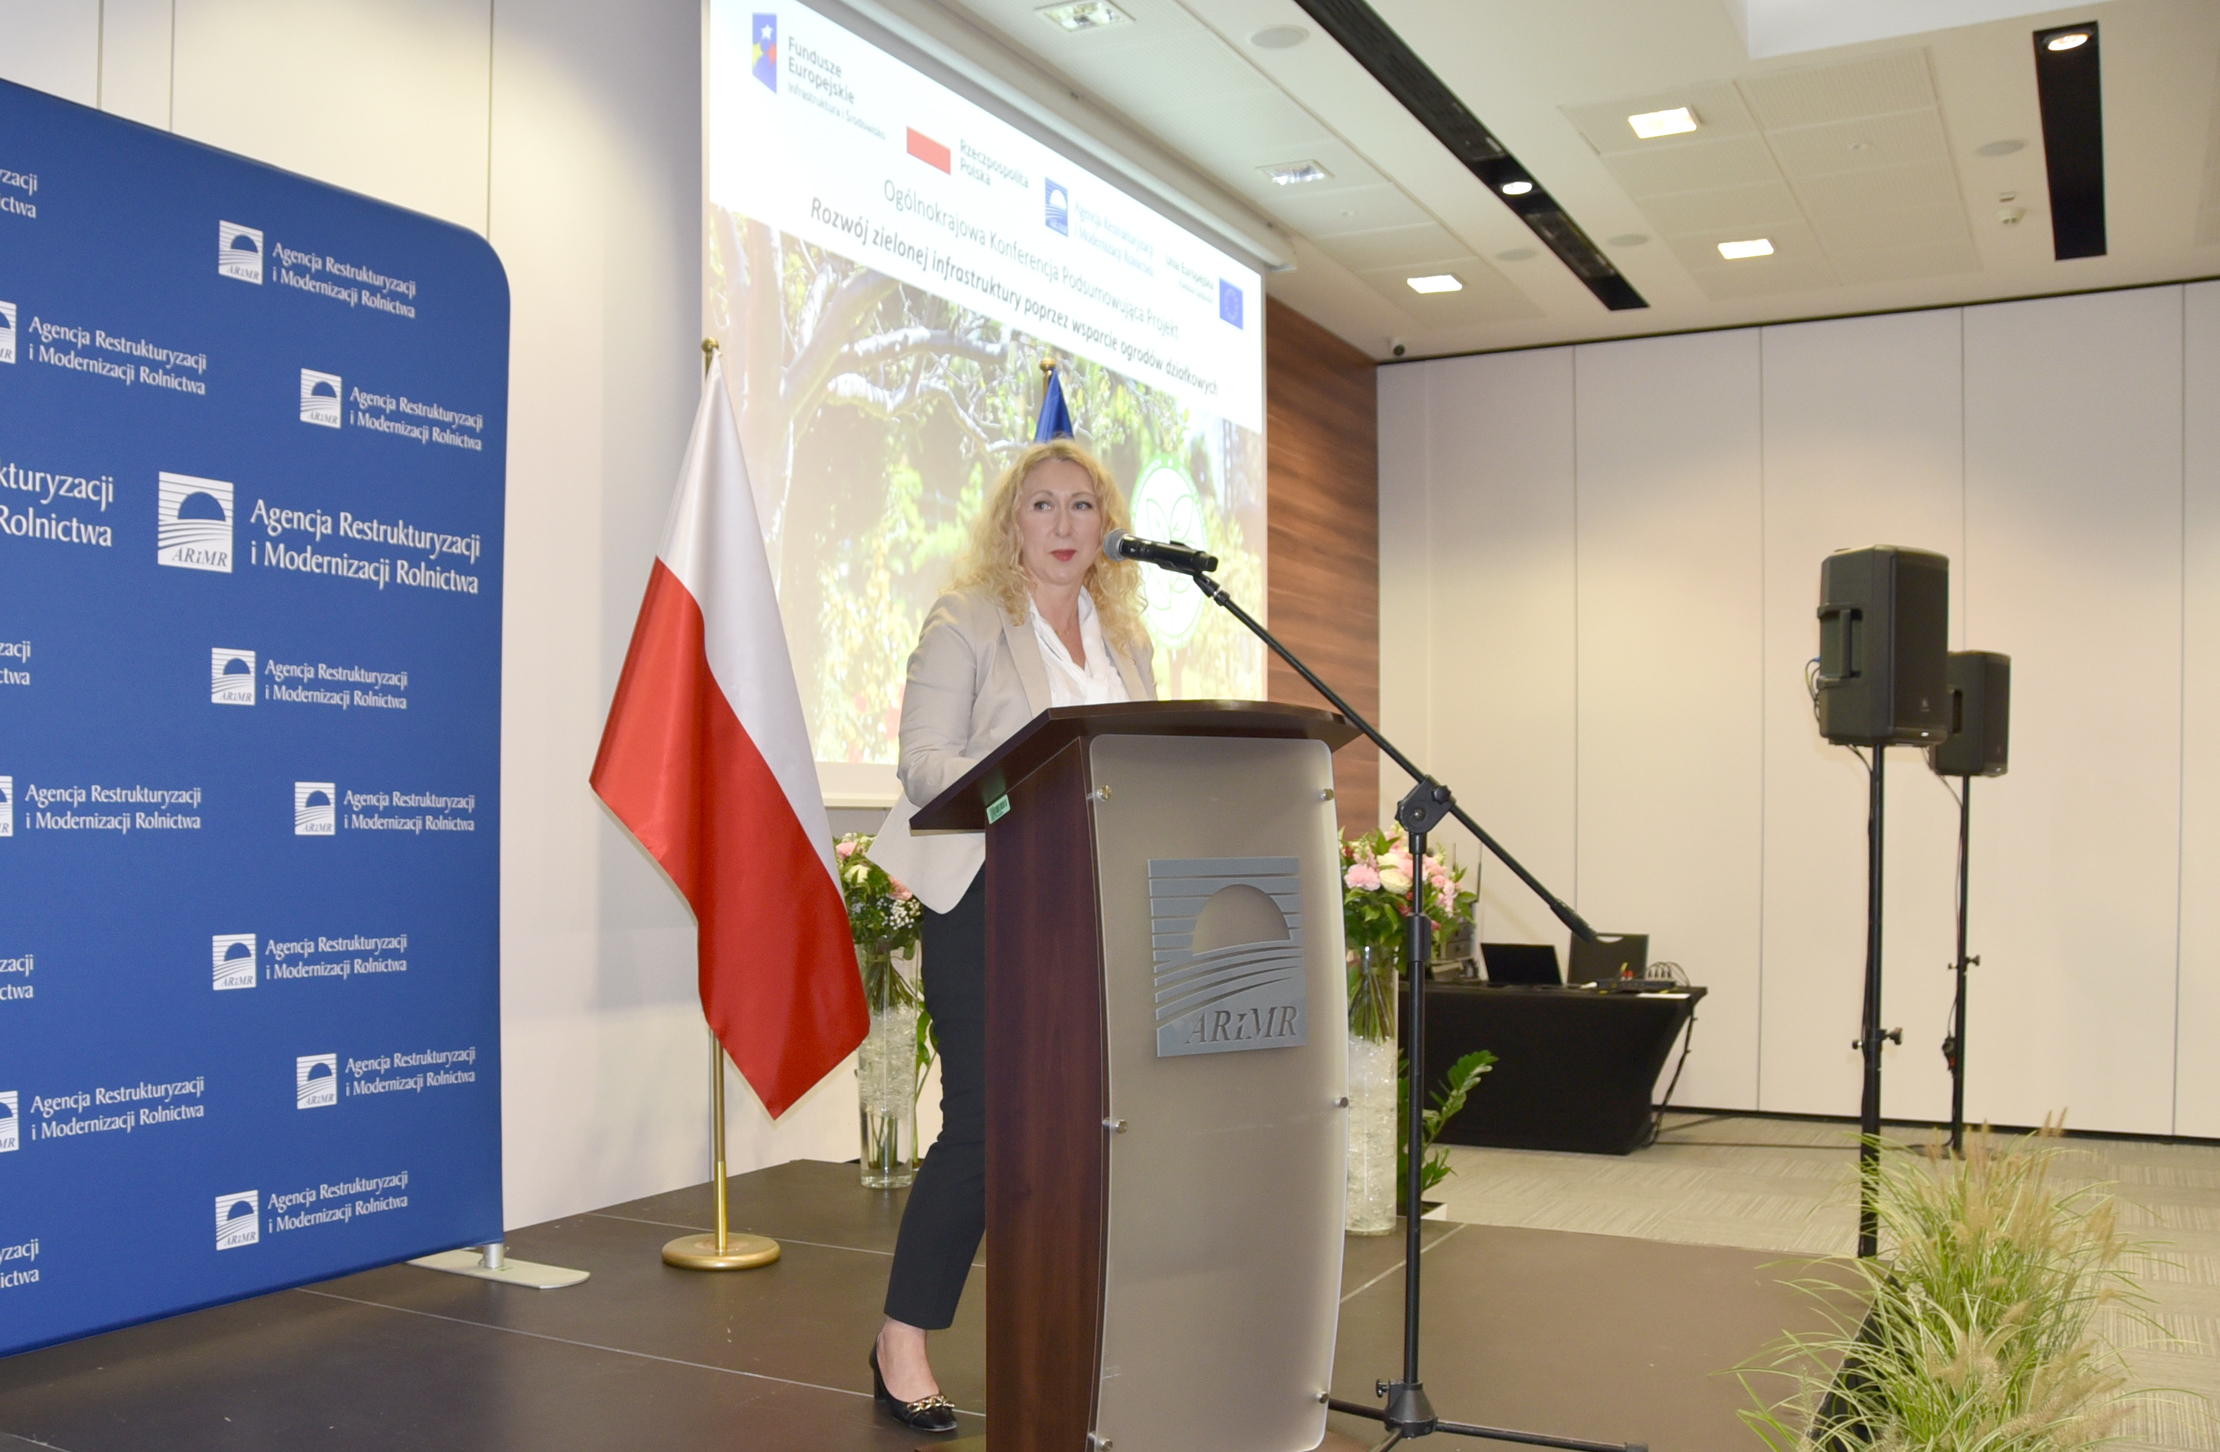 Joanna Książek-Wieder, dyrektor z Ministerstwa Klimatu i Środowiska: Skupiliśmy się na poprawie jakości życia człowieka w środowisku i adaptacji do zmian klimatu